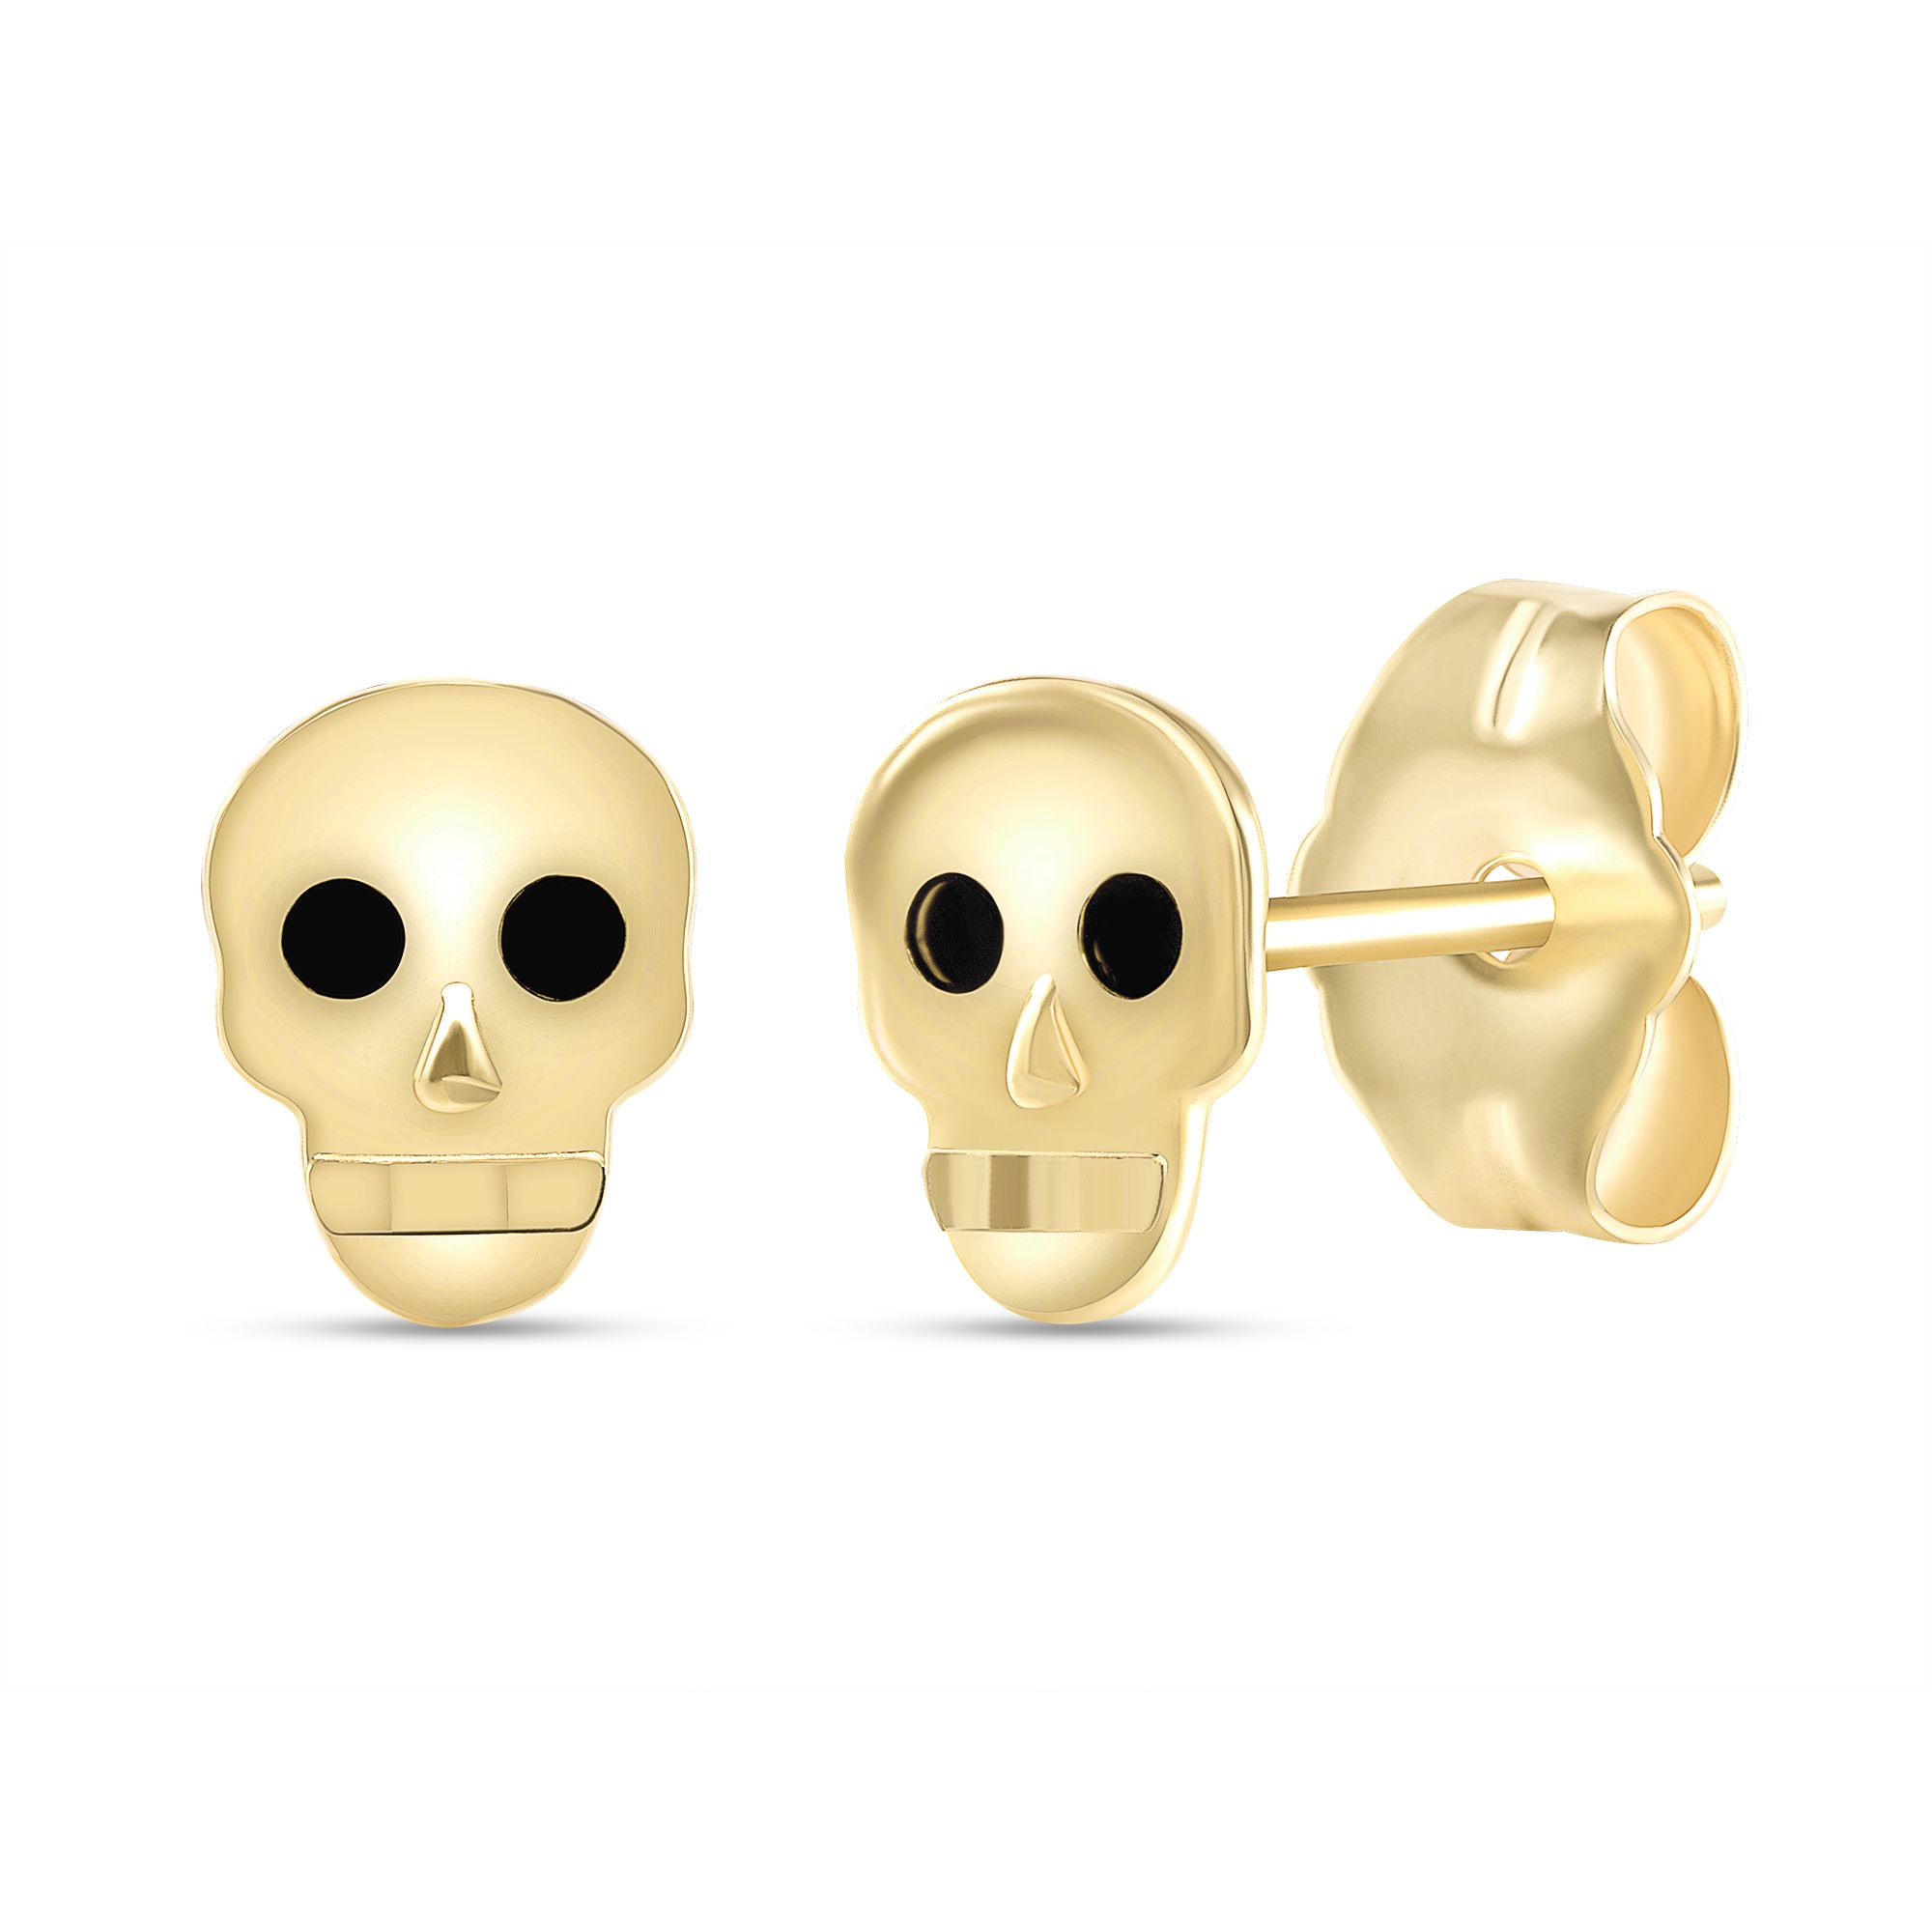 Skull Gold Earrings Hotsell, 55% OFF | www.emanagreen.com